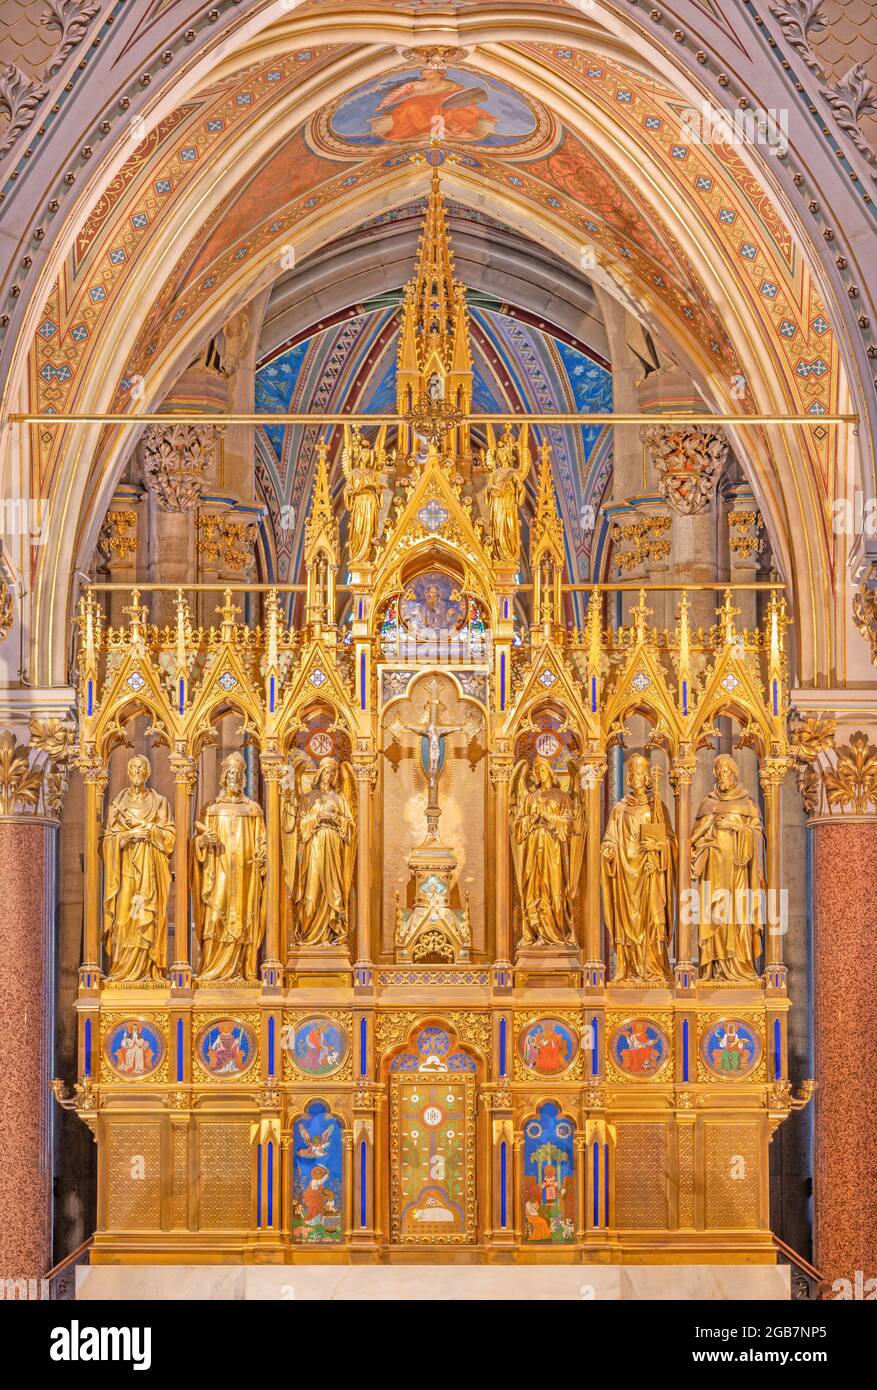 WIEN, AUSTIRA - 24. JUNI 2021: Der neugotische Altar der Votivkirche nach einem Entwurf von Joseph Gasser (19. Jh.). Stockfoto